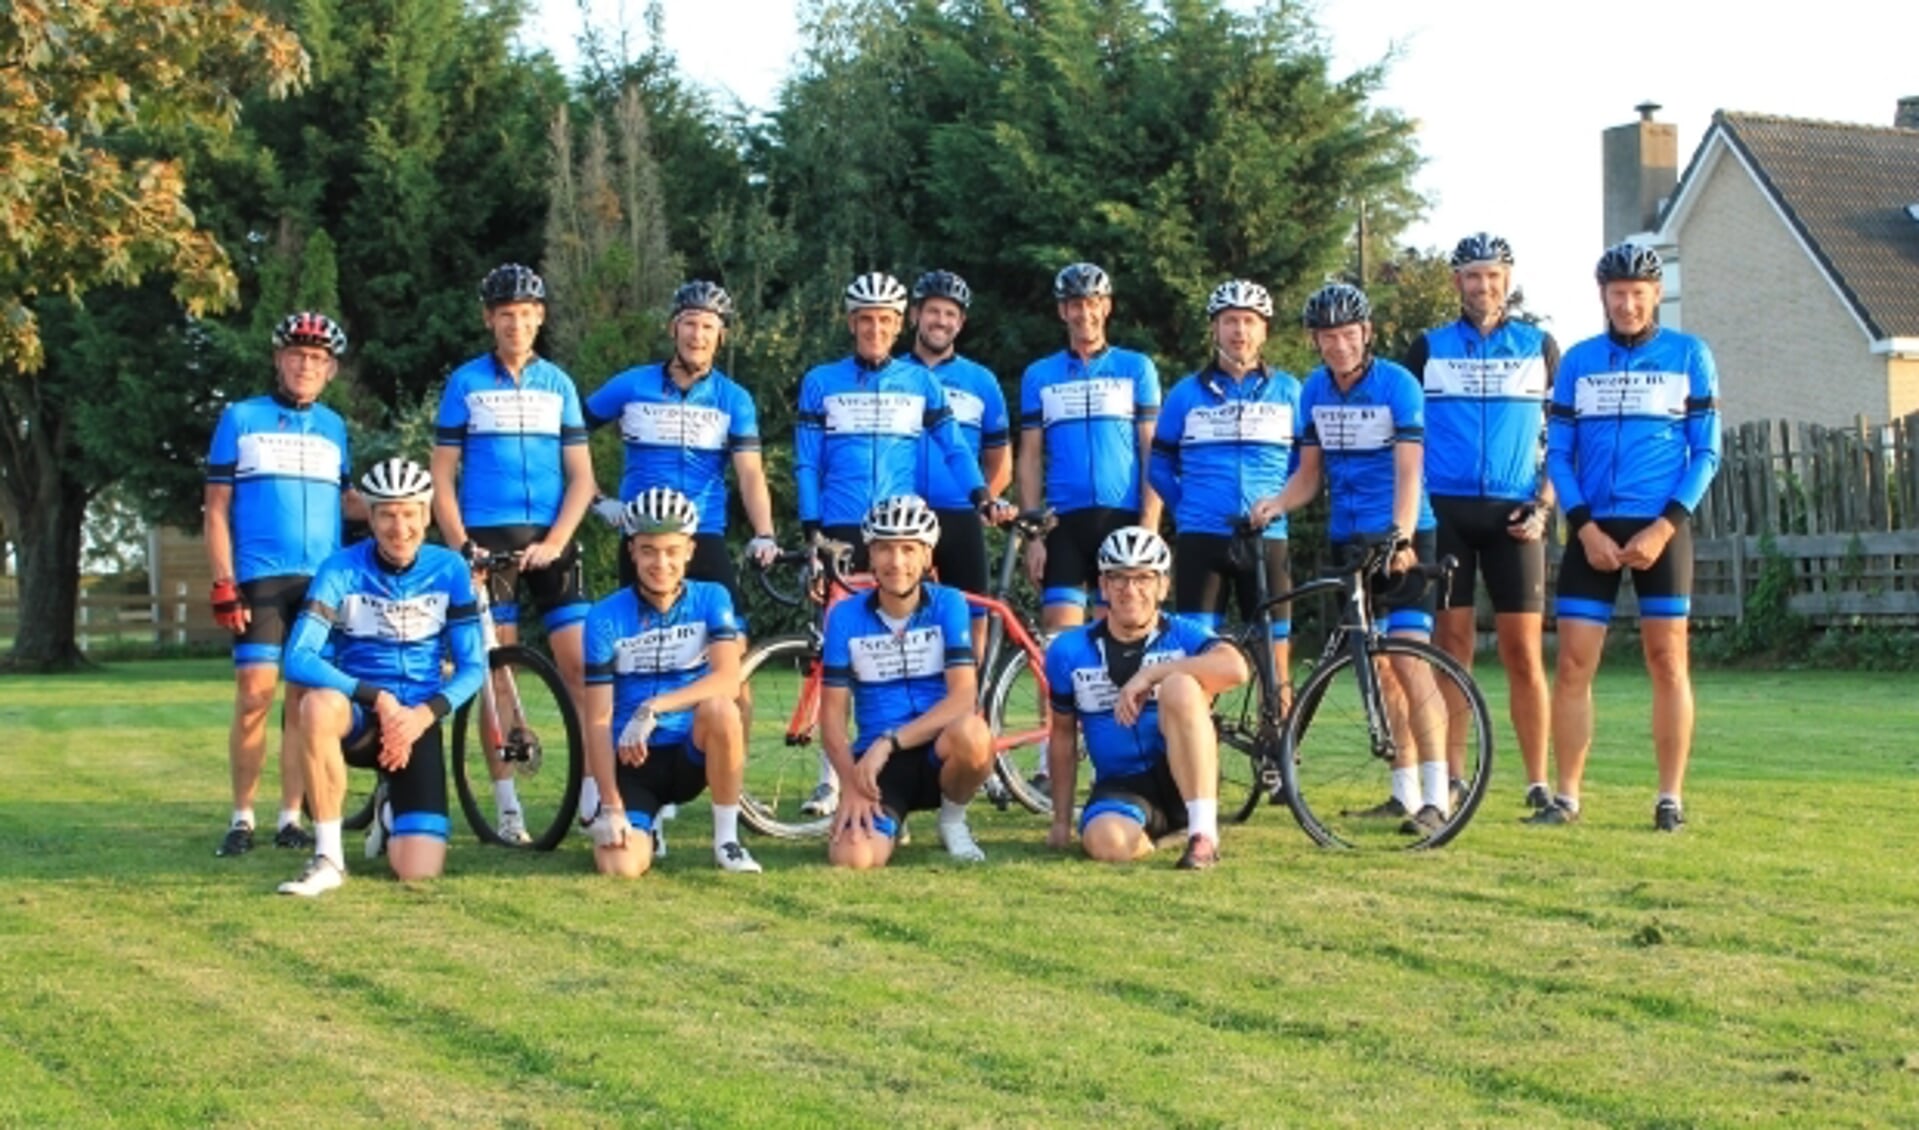 De fietsvrienden uit Montfoort, die al heel wat jaren samen fietsen, zijn in het nieuw gestoken. (Foto: Frank Vianen)